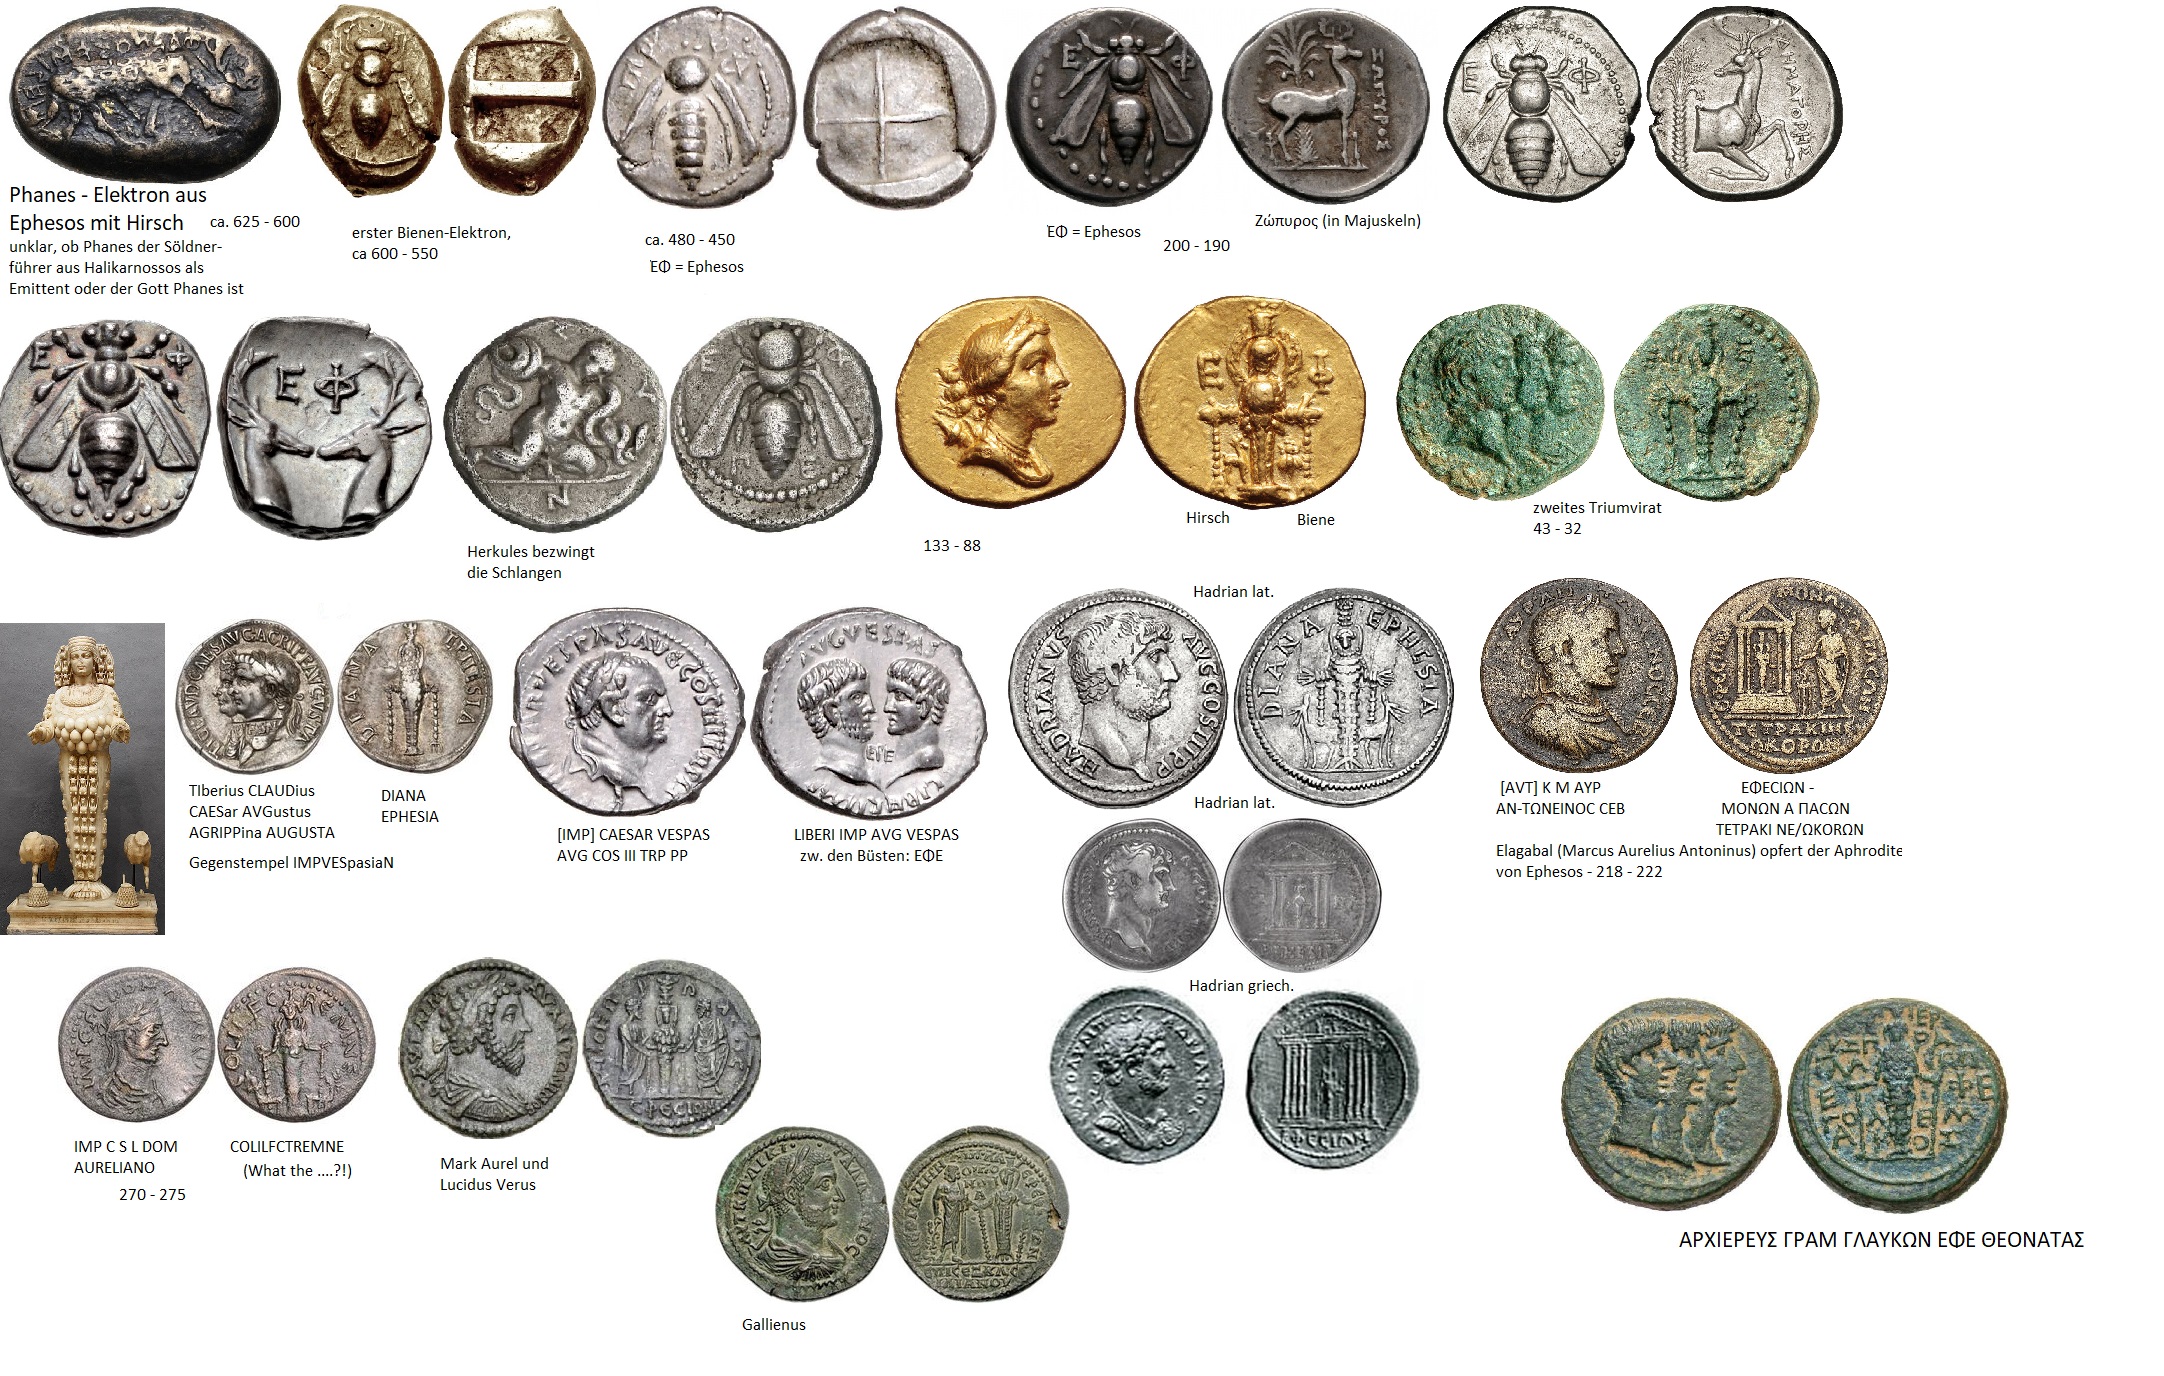 Auswahl an ephesischen Münzen.jpg